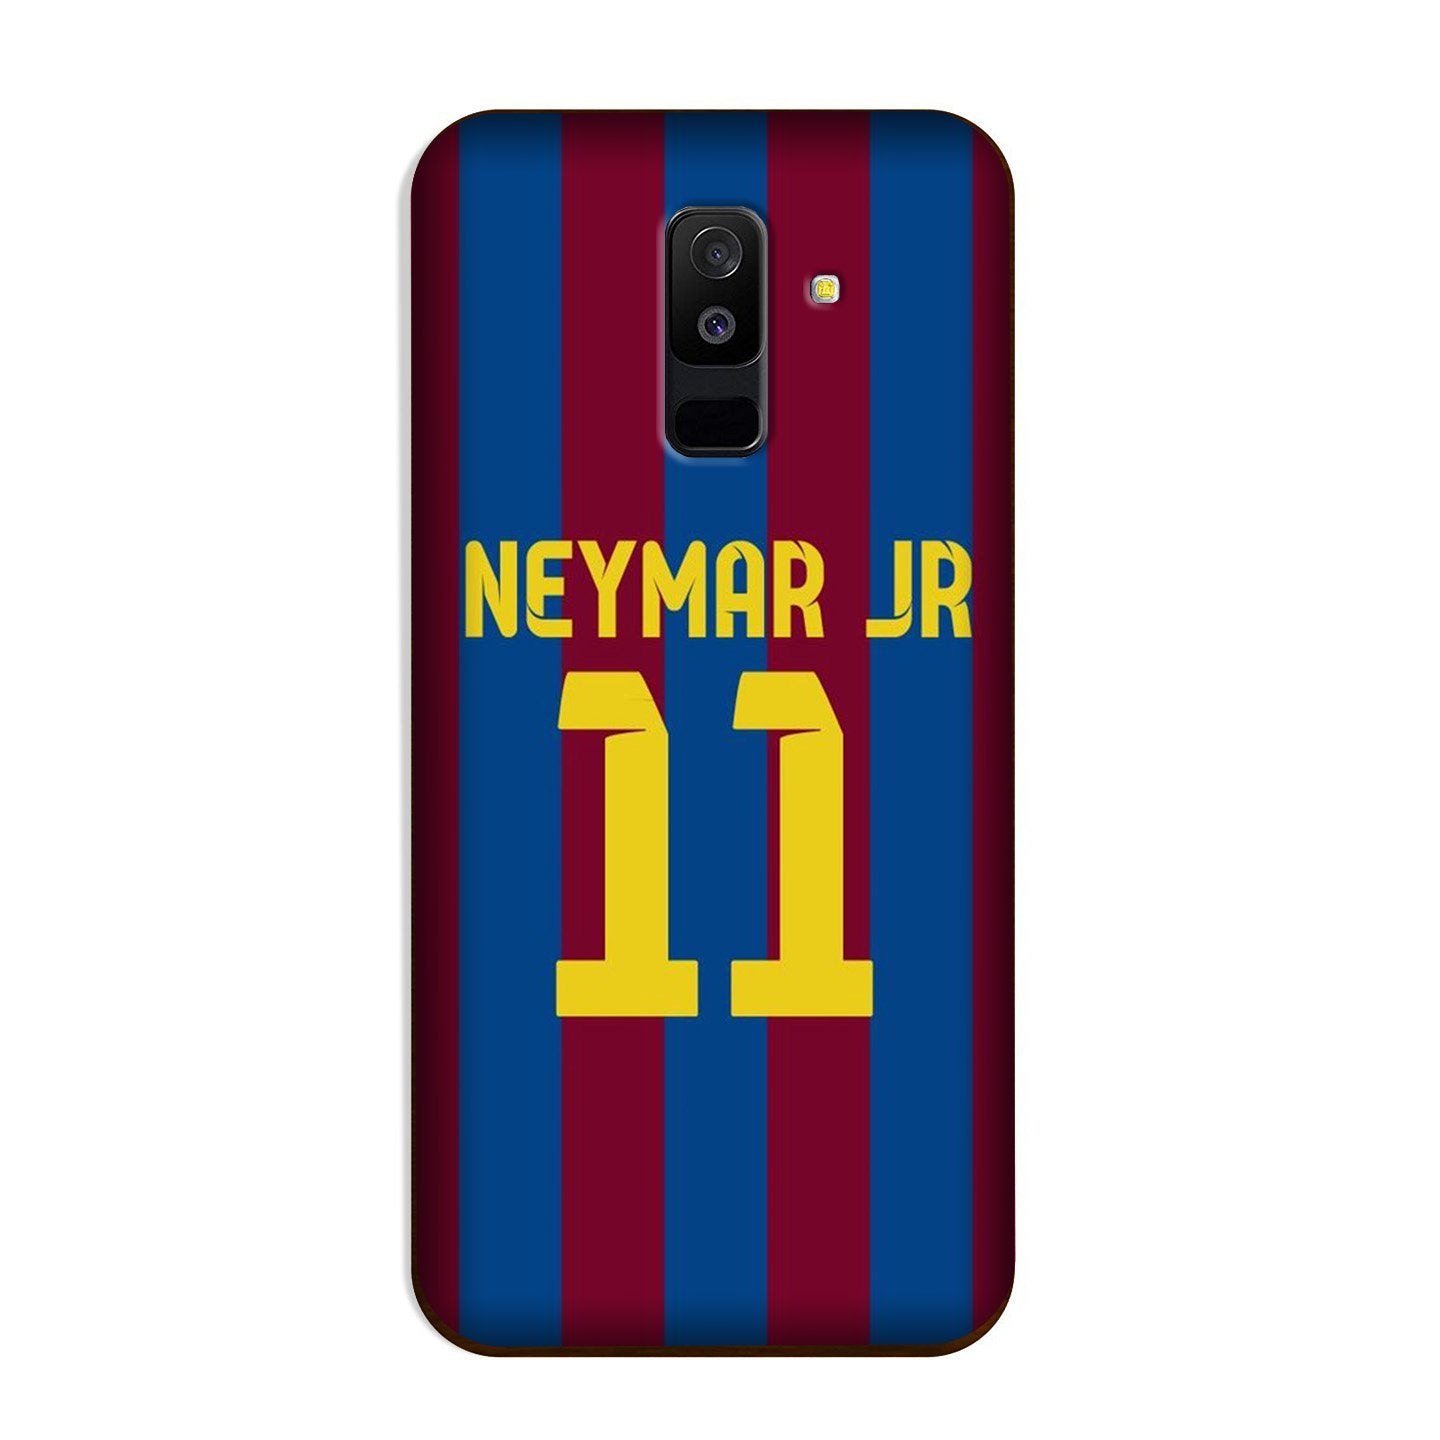 Neymar Jr Case for Galaxy J8  (Design - 162)